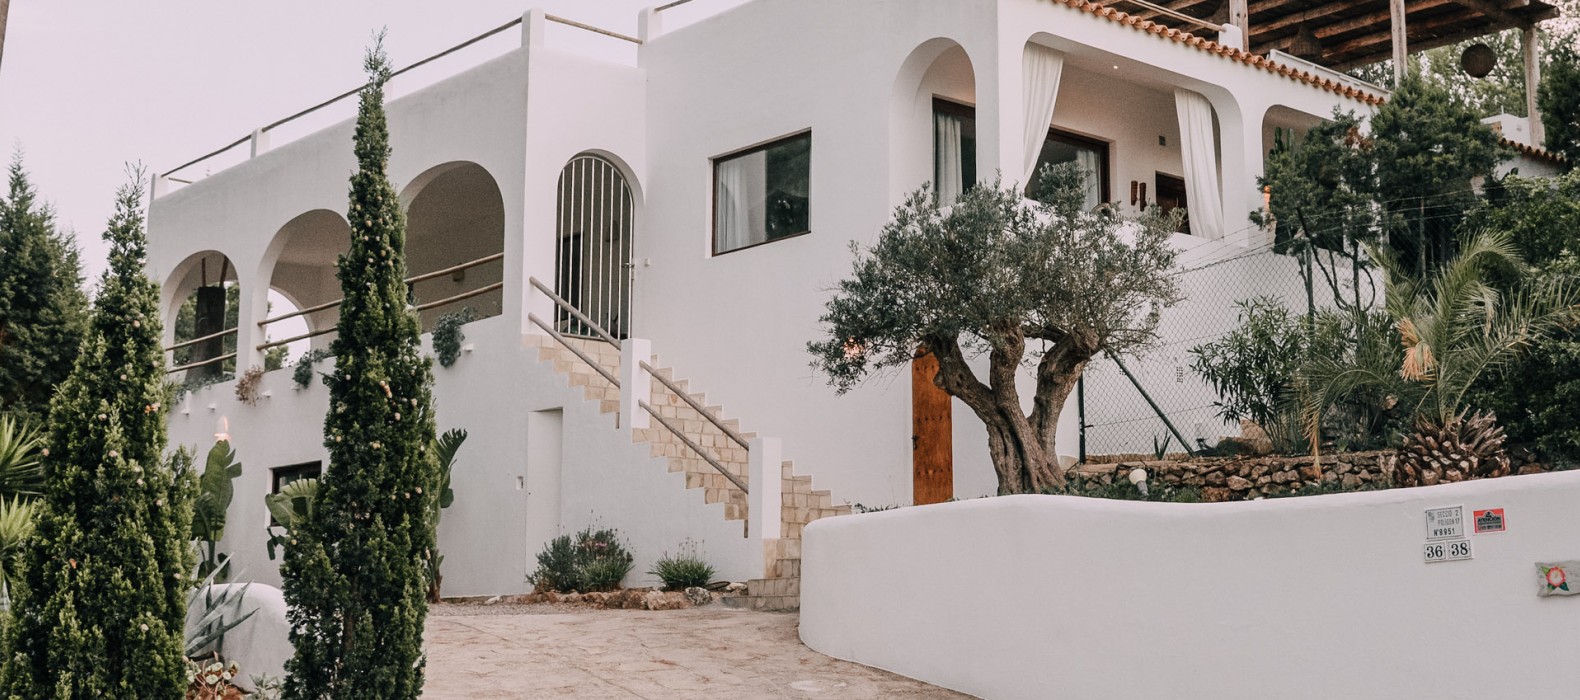 Exterior Entry way of Villa La Colina in Ibiza